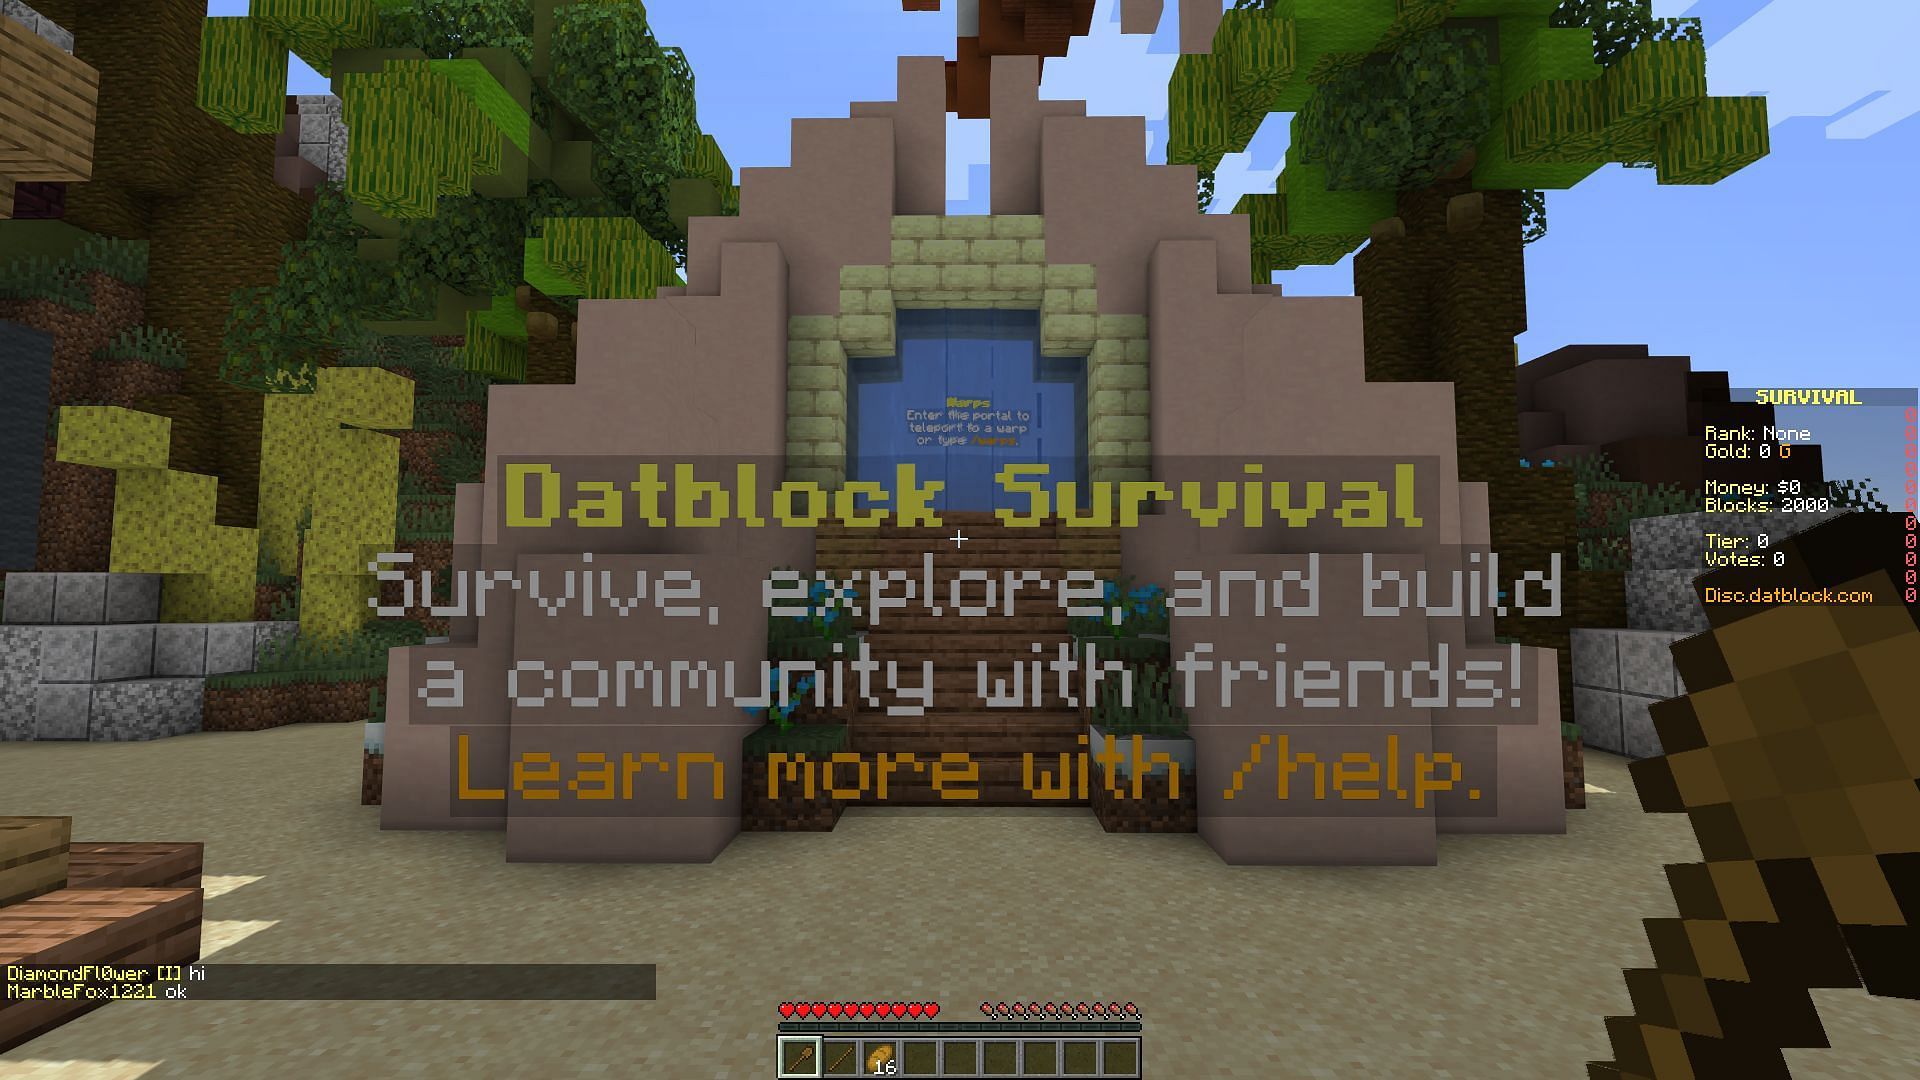 The Datblock spawn area (Image via Minecraft)